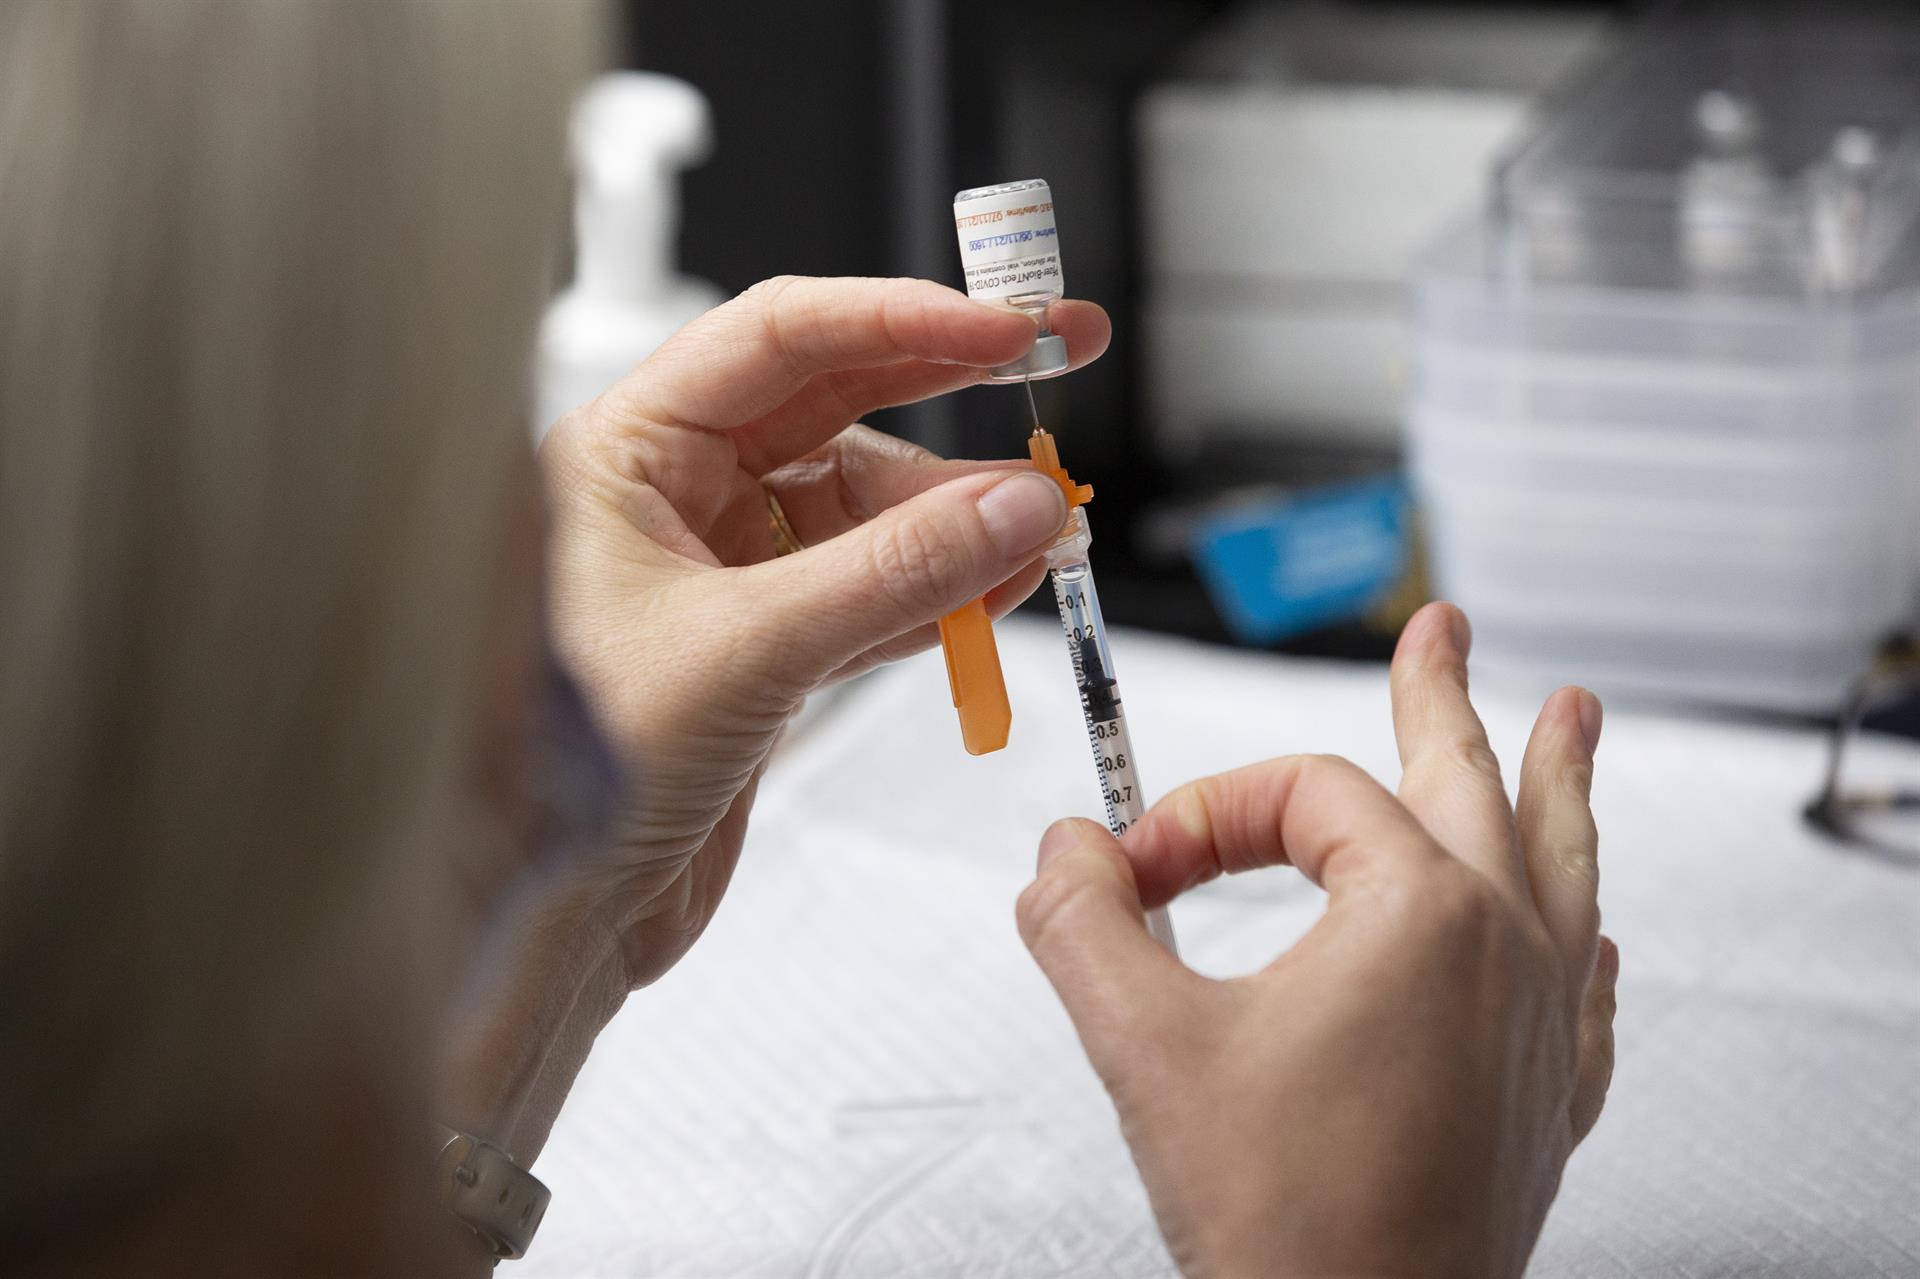 La Casa Blanca no descarta que vacuna de refuerzo sea aprobada en el futuro